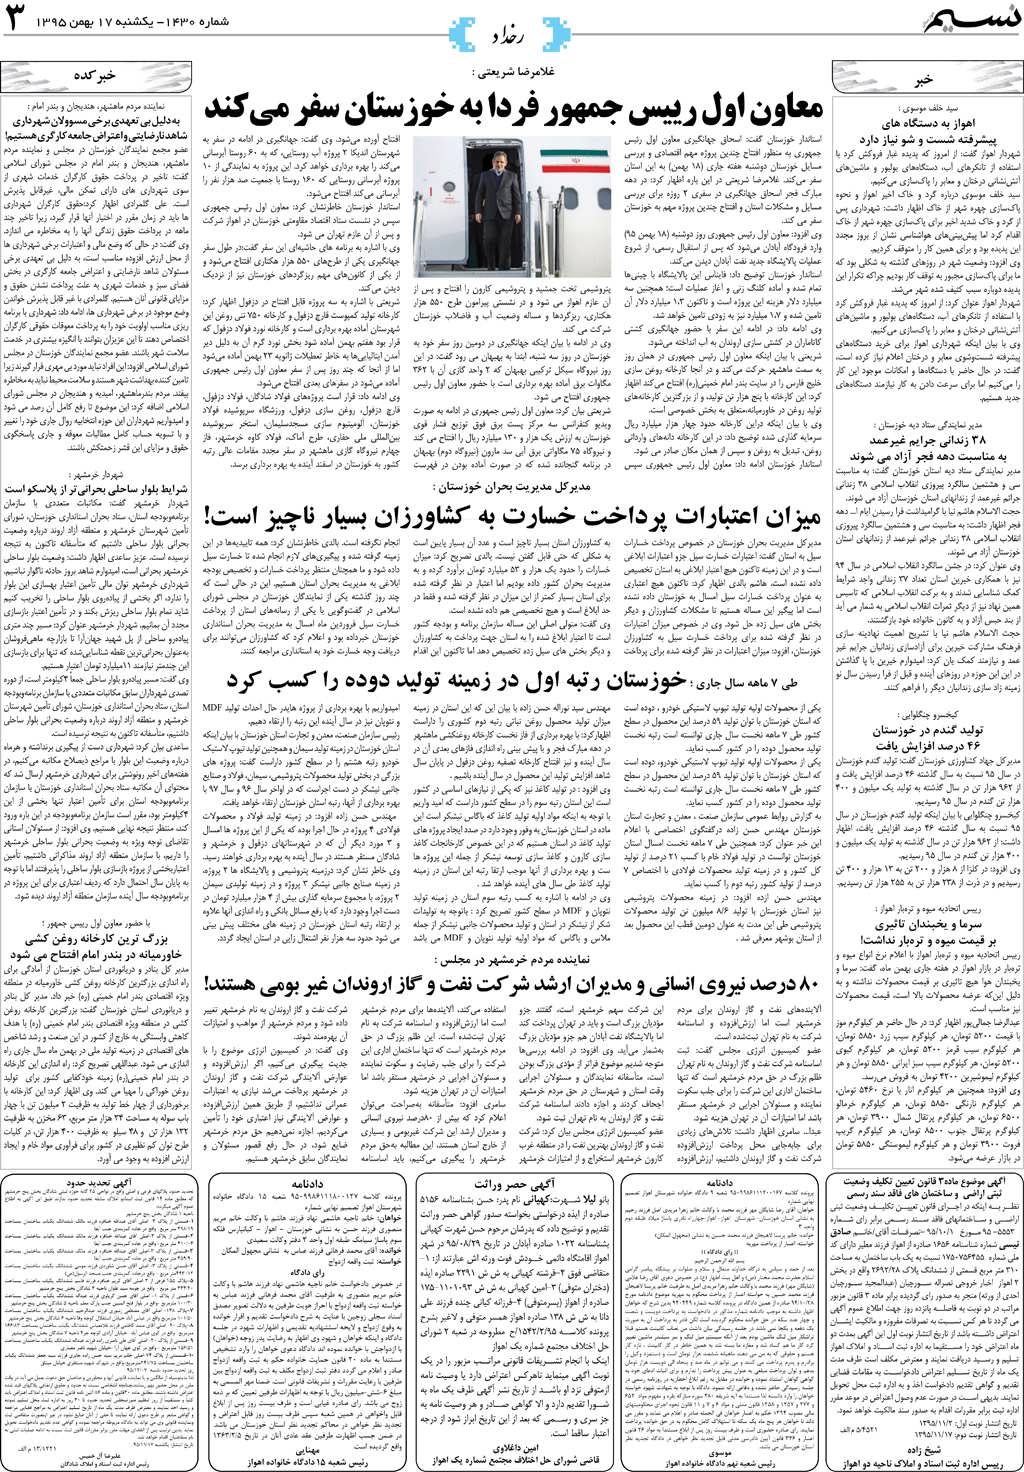 صفحه رخداد روزنامه نسیم شماره 1430